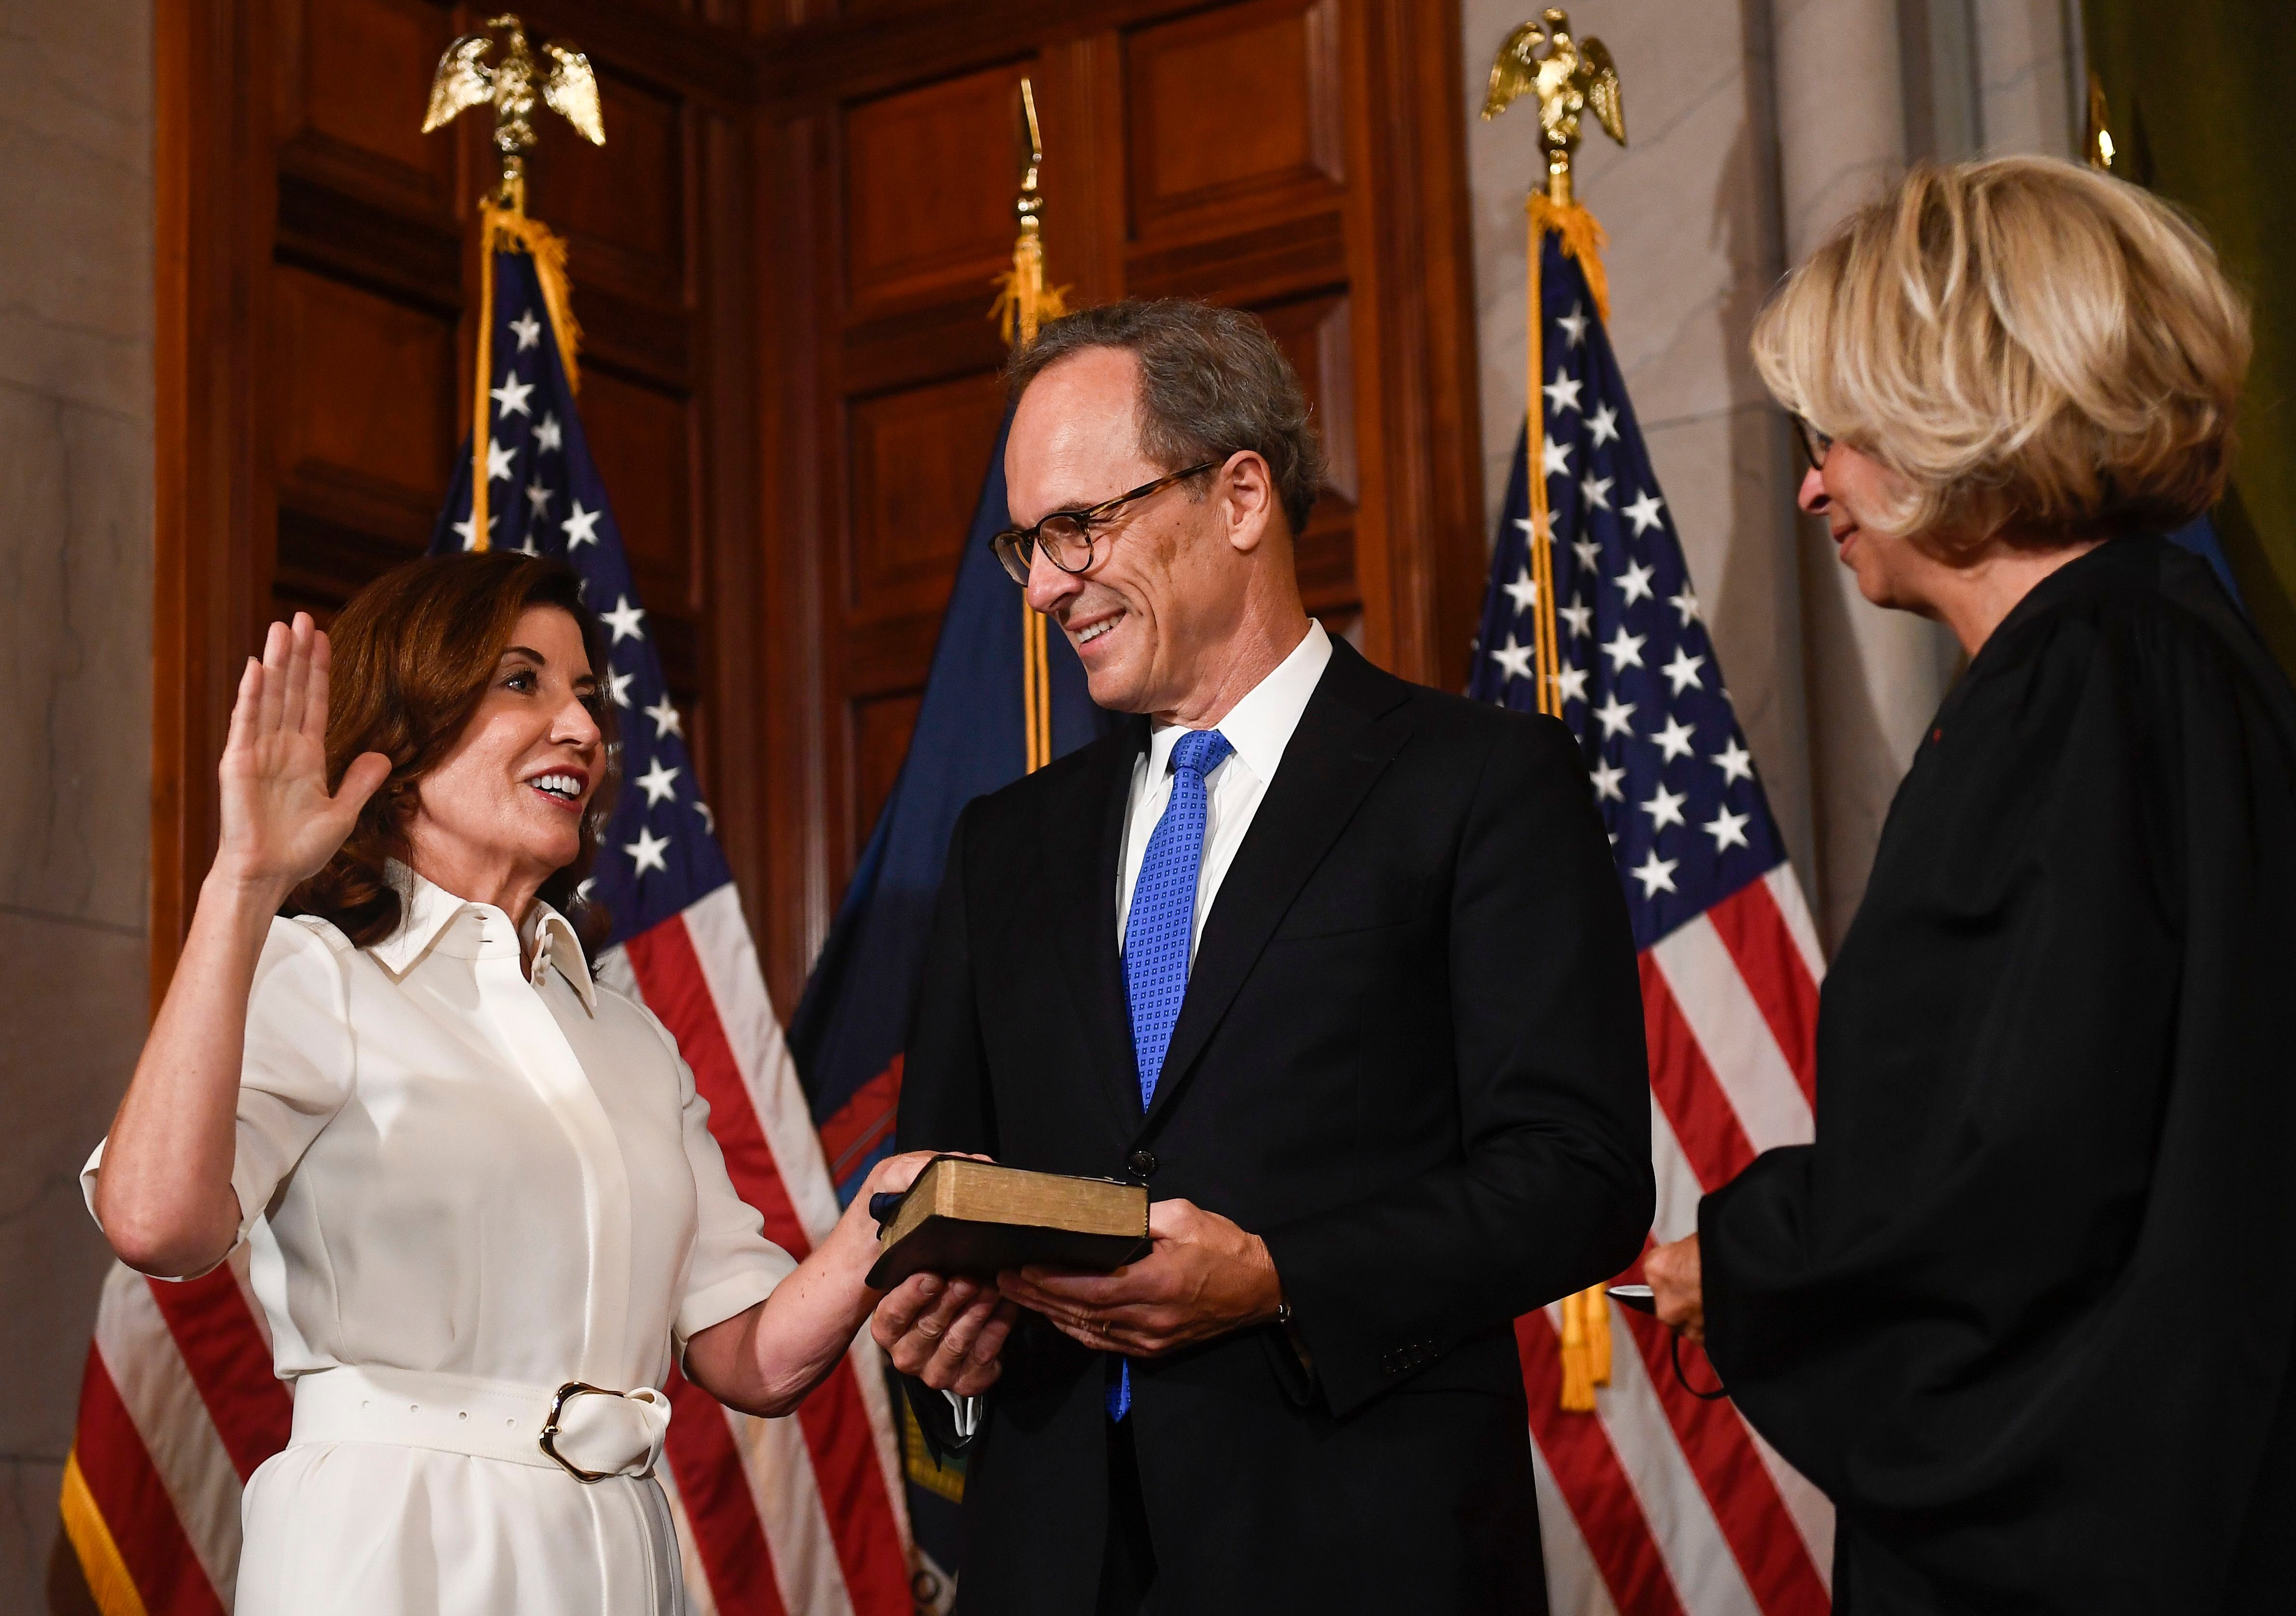 Kathy Hochul asume cargo como la primera mujer gobernadora de NY